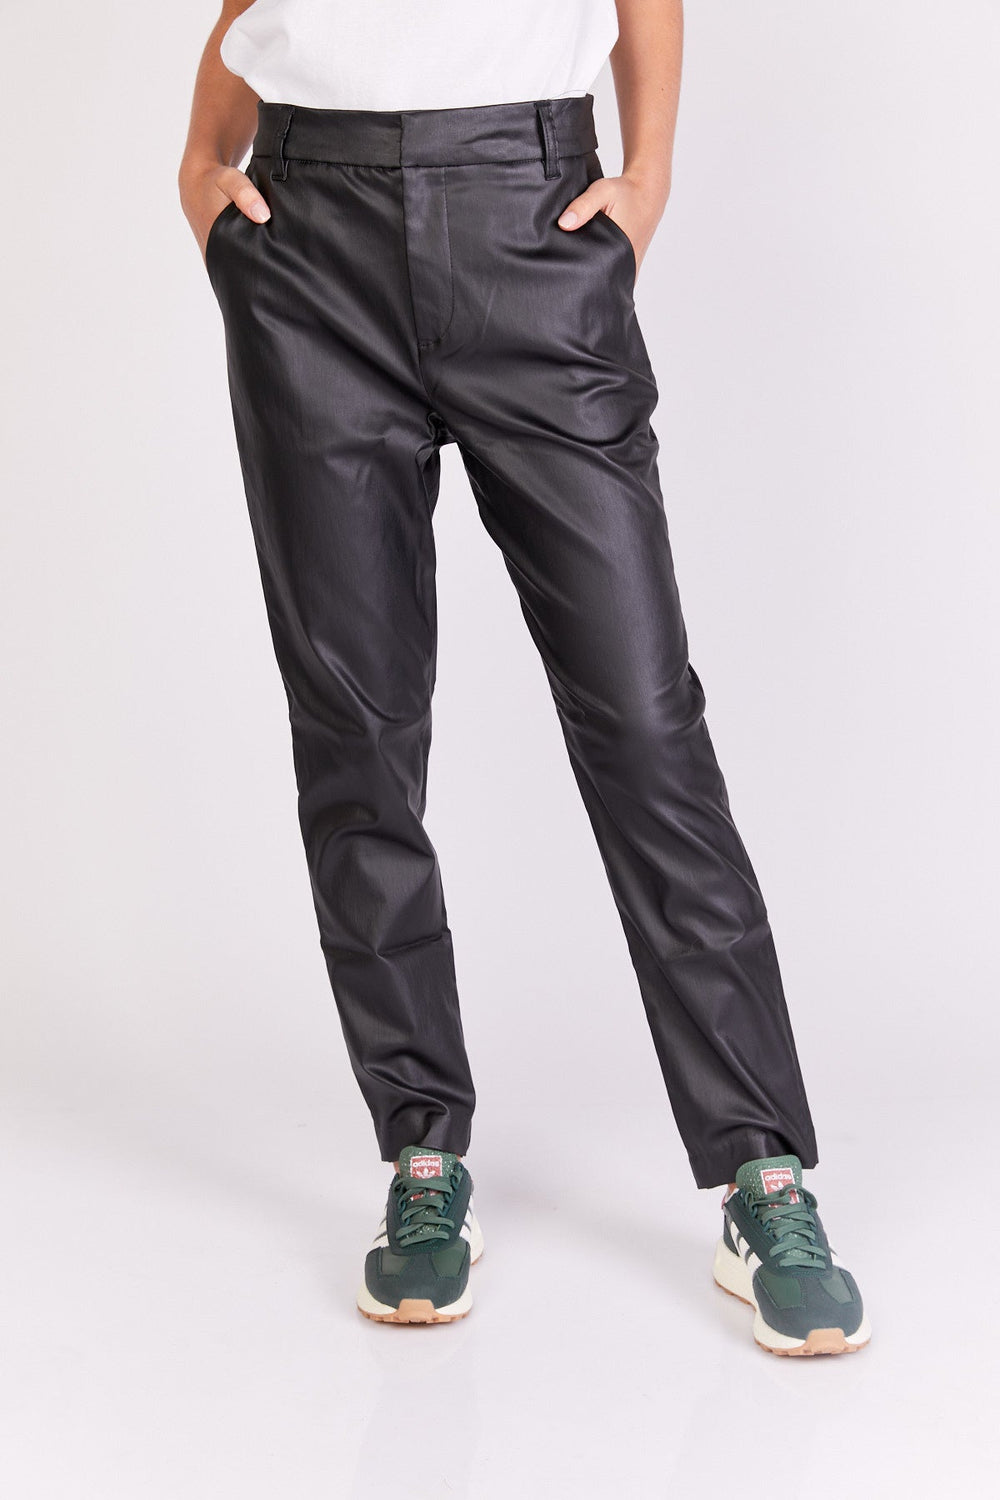 מכנסי גאז' בצבע שחור - Razili Studio